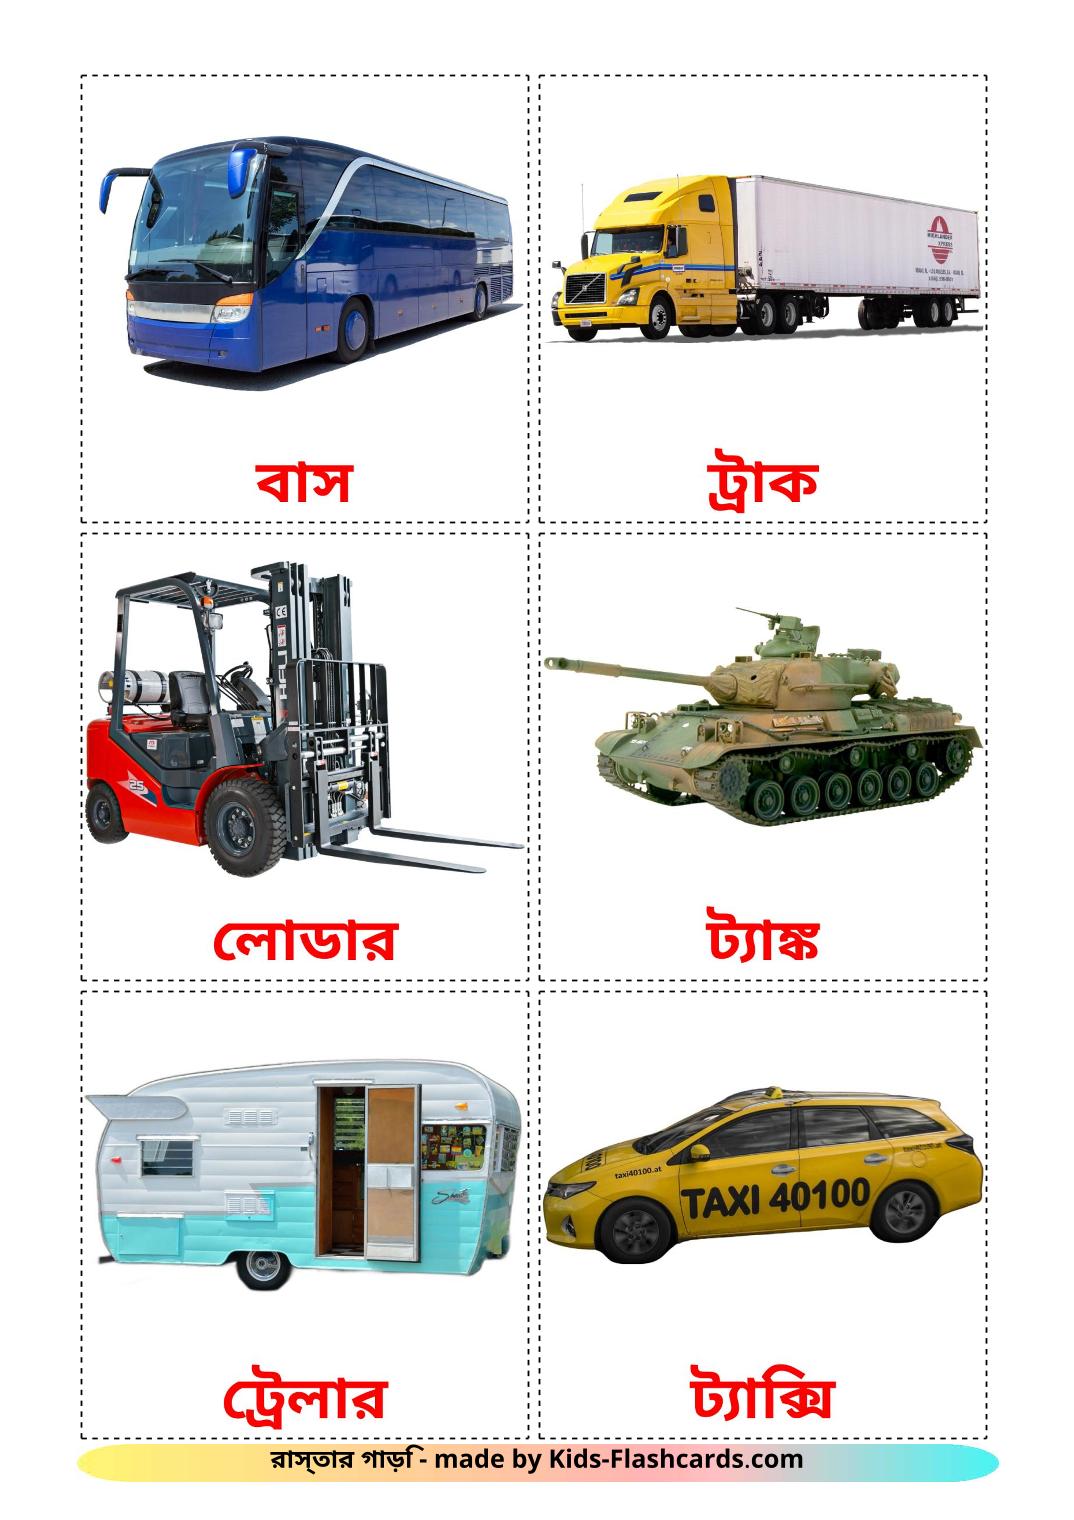 Transporte terrestre - 27 fichas de bengalí para imprimir gratis 